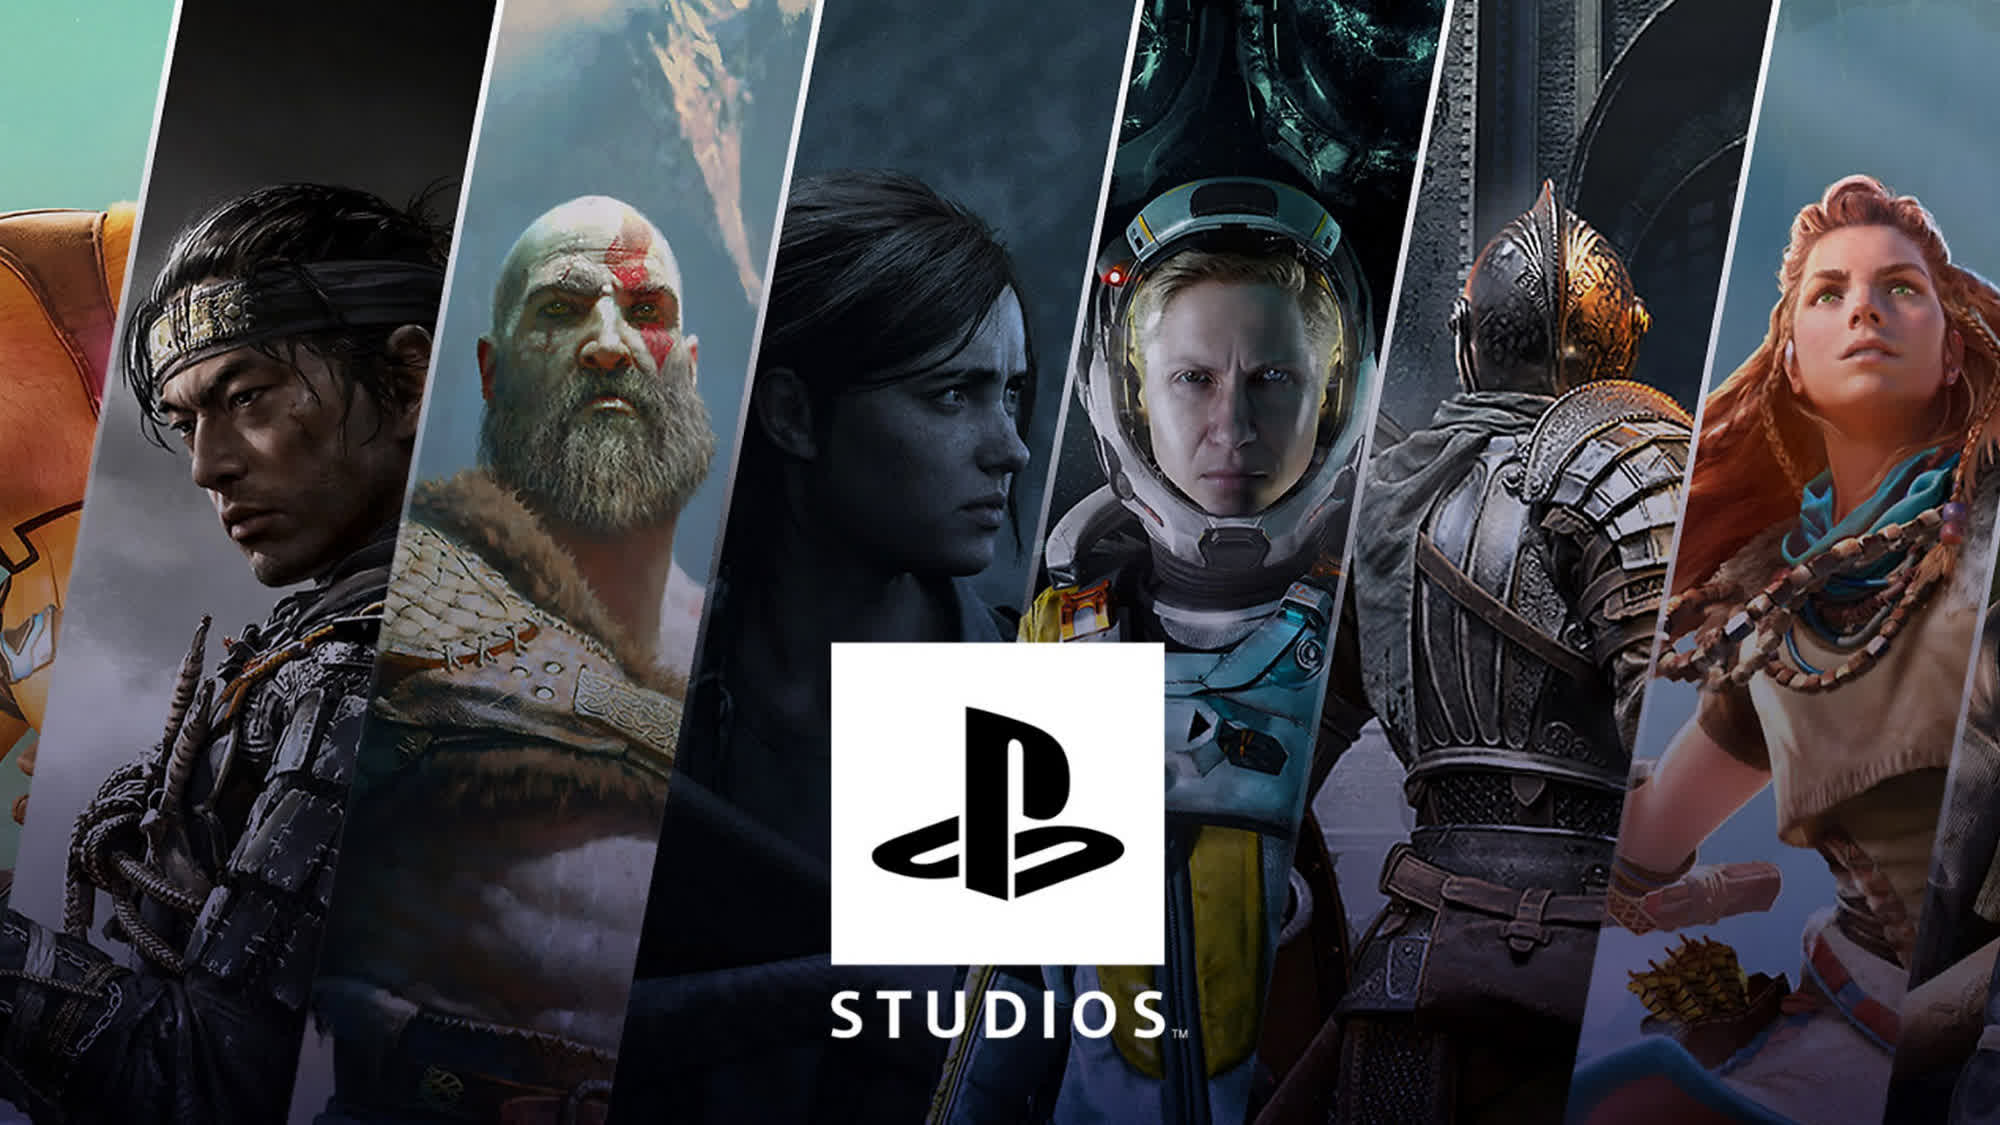 El presidente de Sony confirma planes para lanzar títulos exclusivos de PS5 en PC